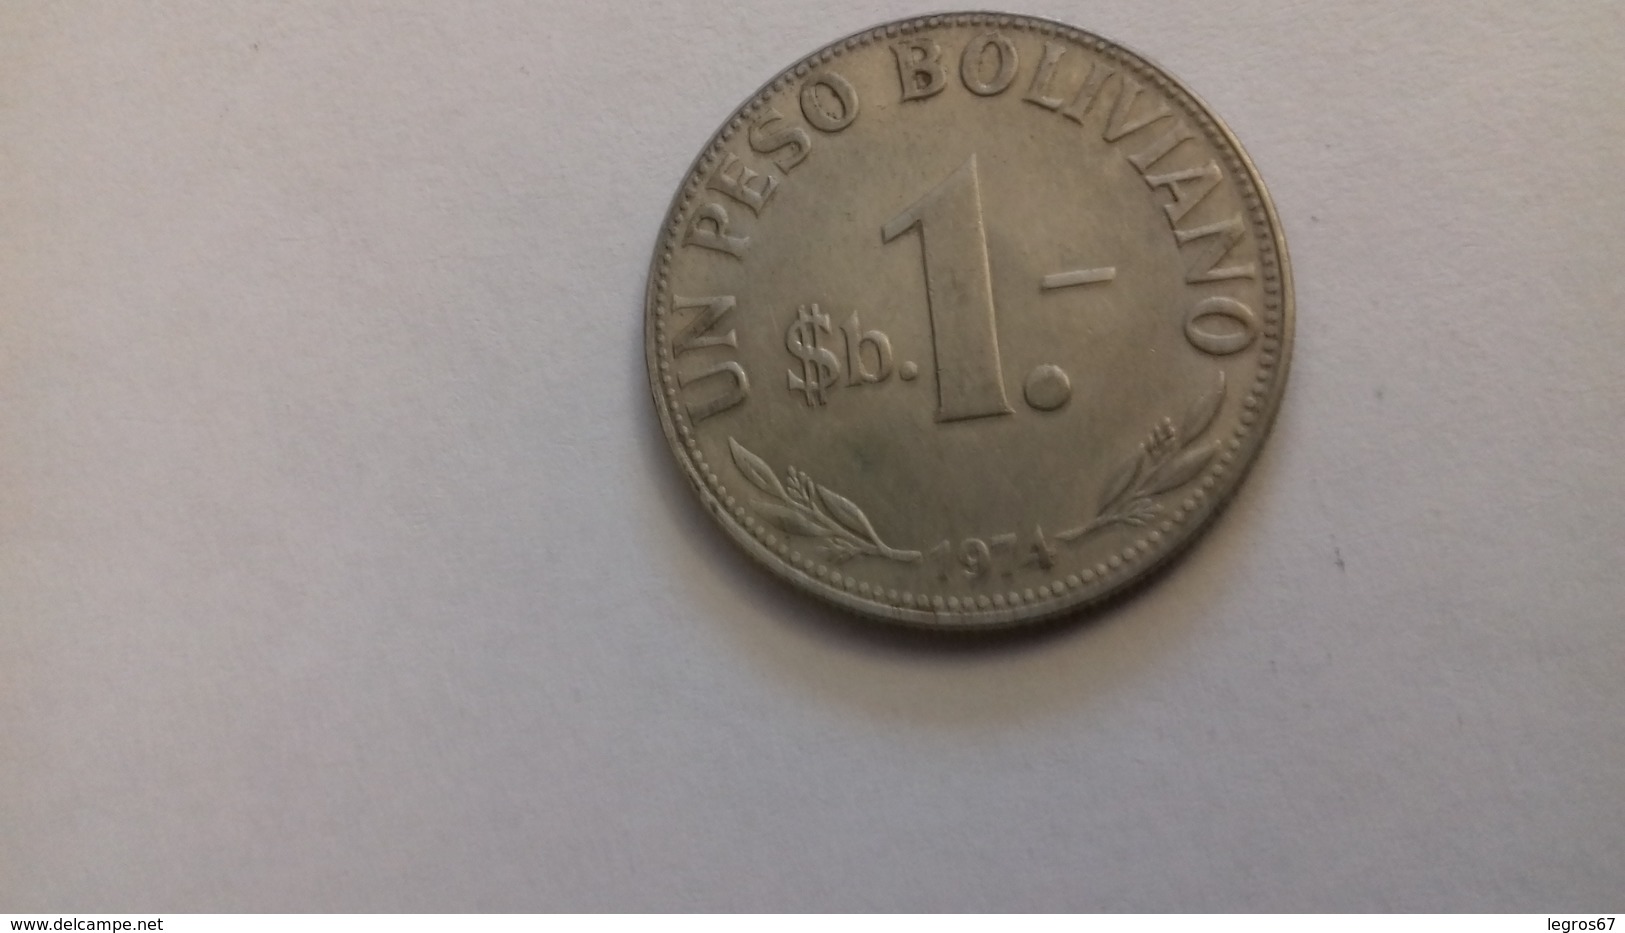 PIECE DE 1 PESO BOLIVIE 1974 - Bolivia